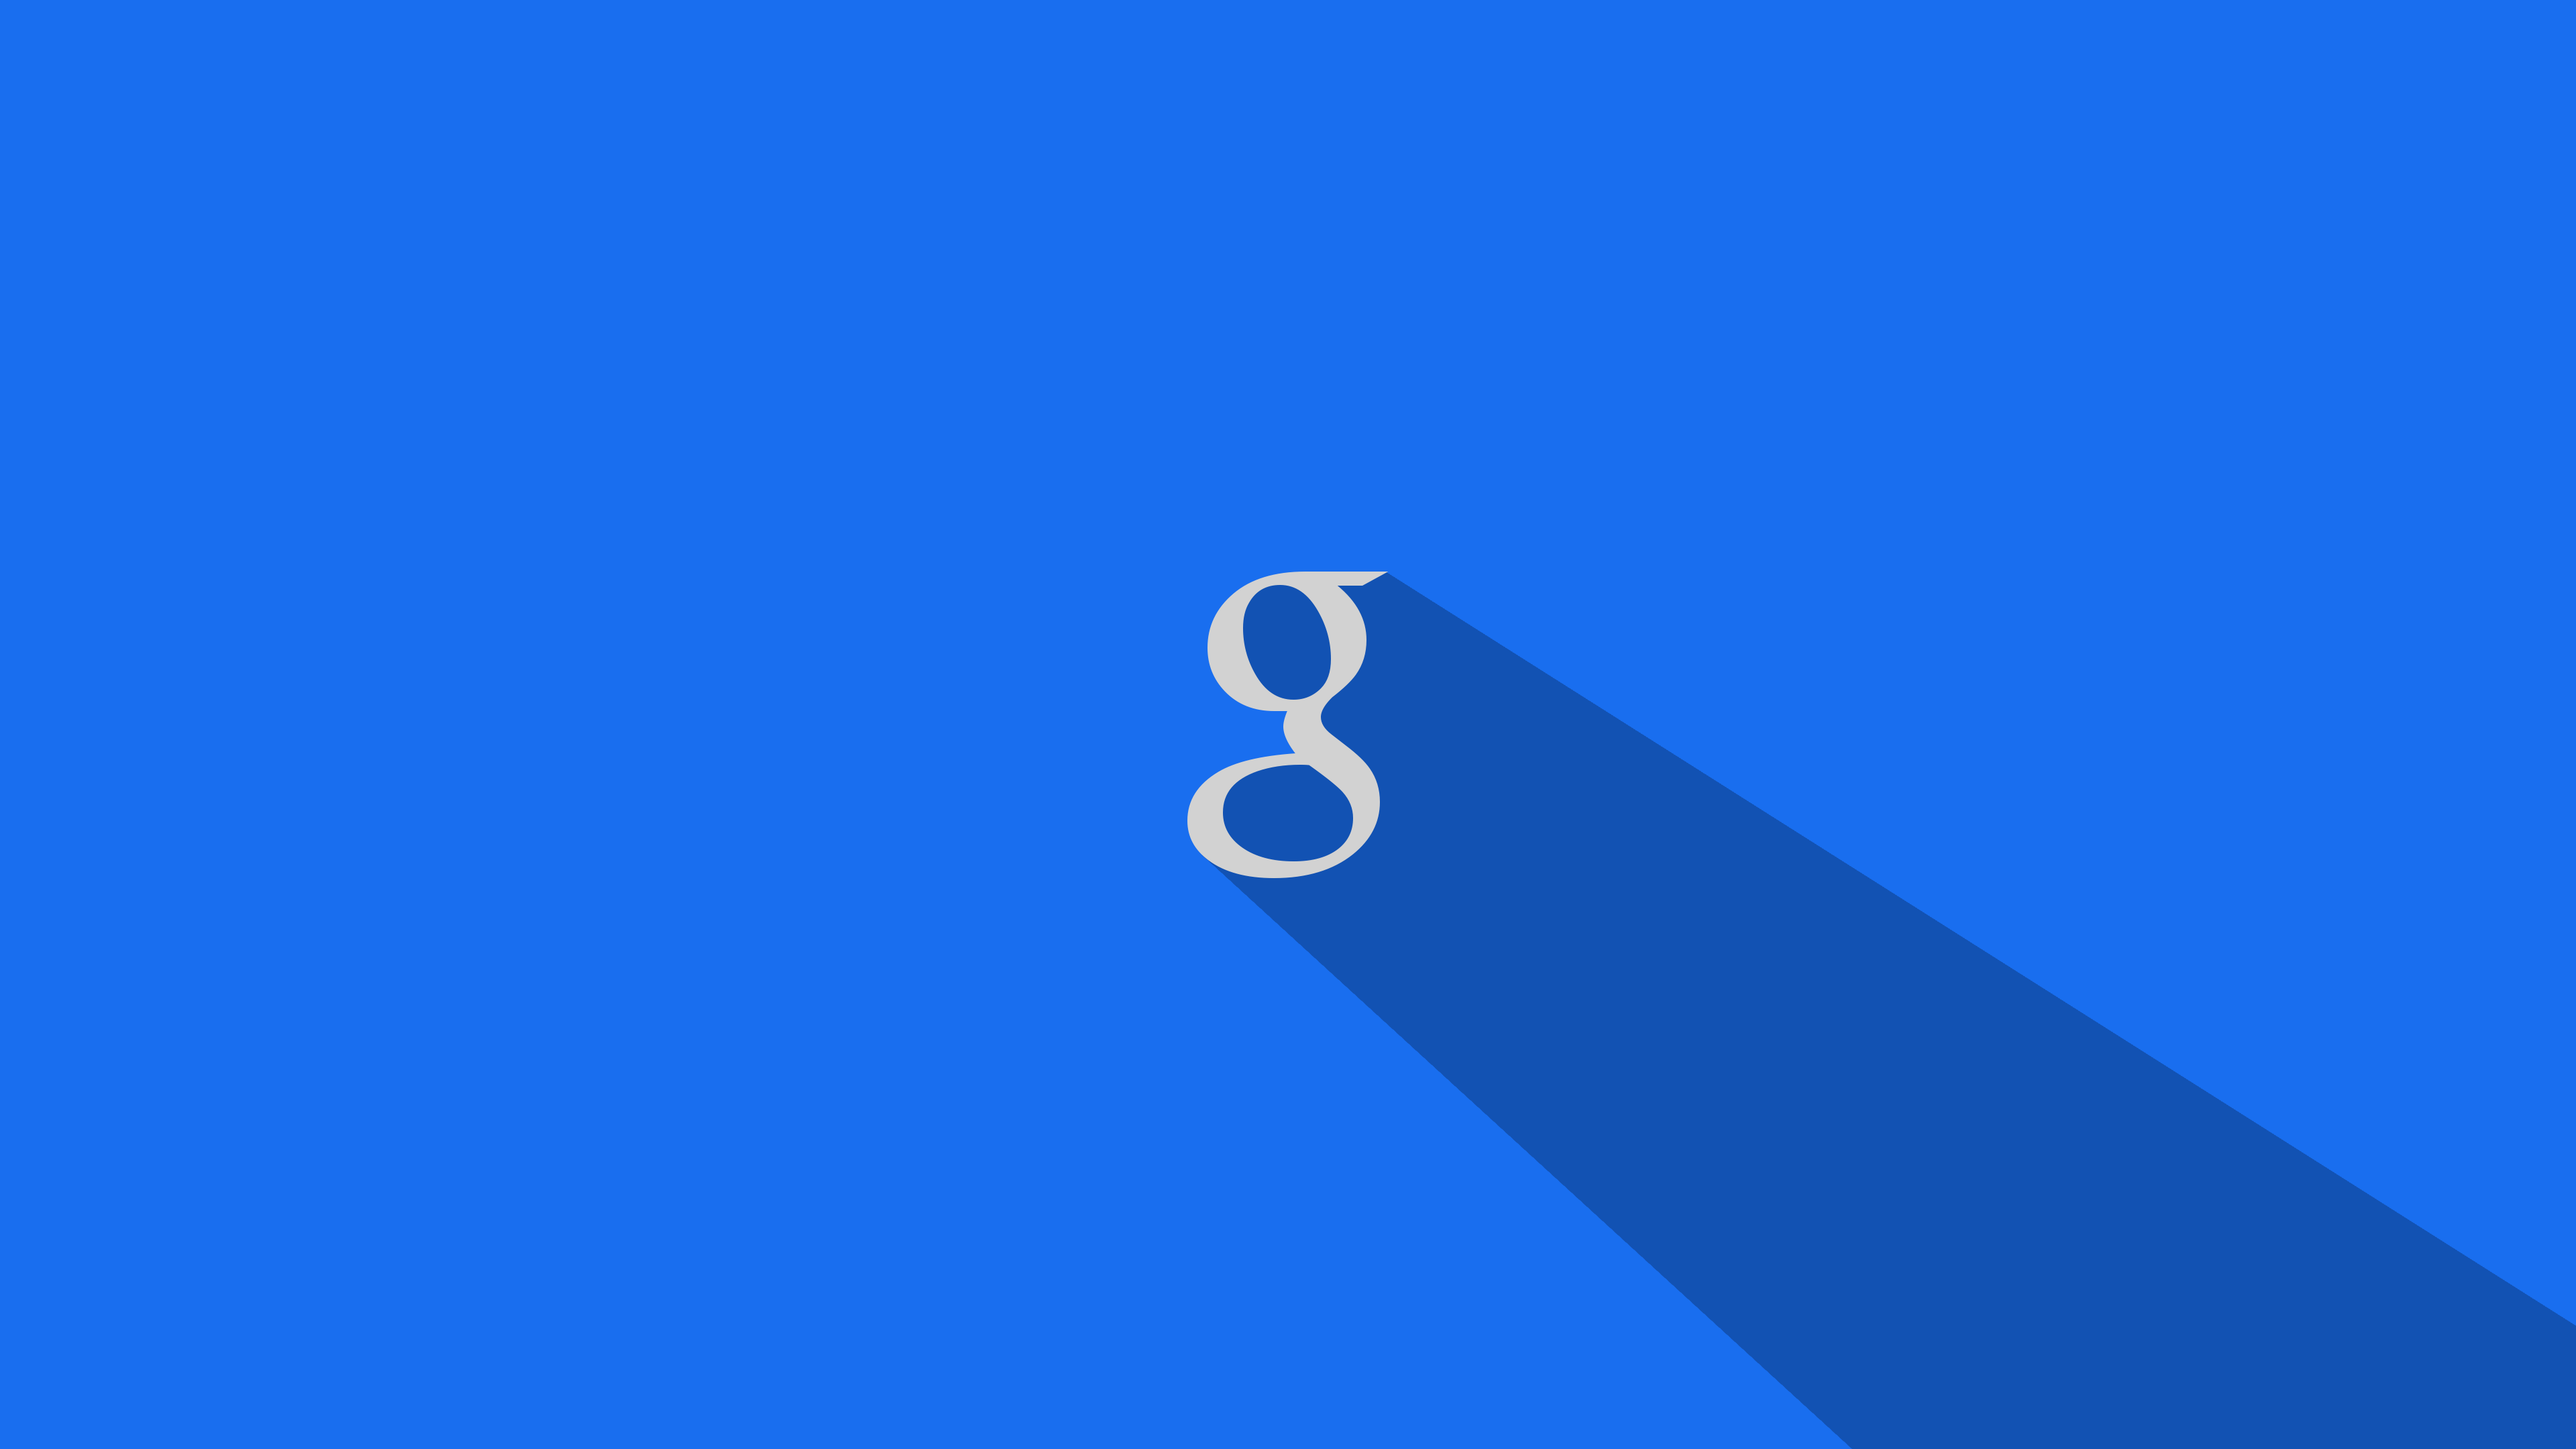 google wallpaper für pc,blau,kobaltblau,tagsüber,elektrisches blau,text